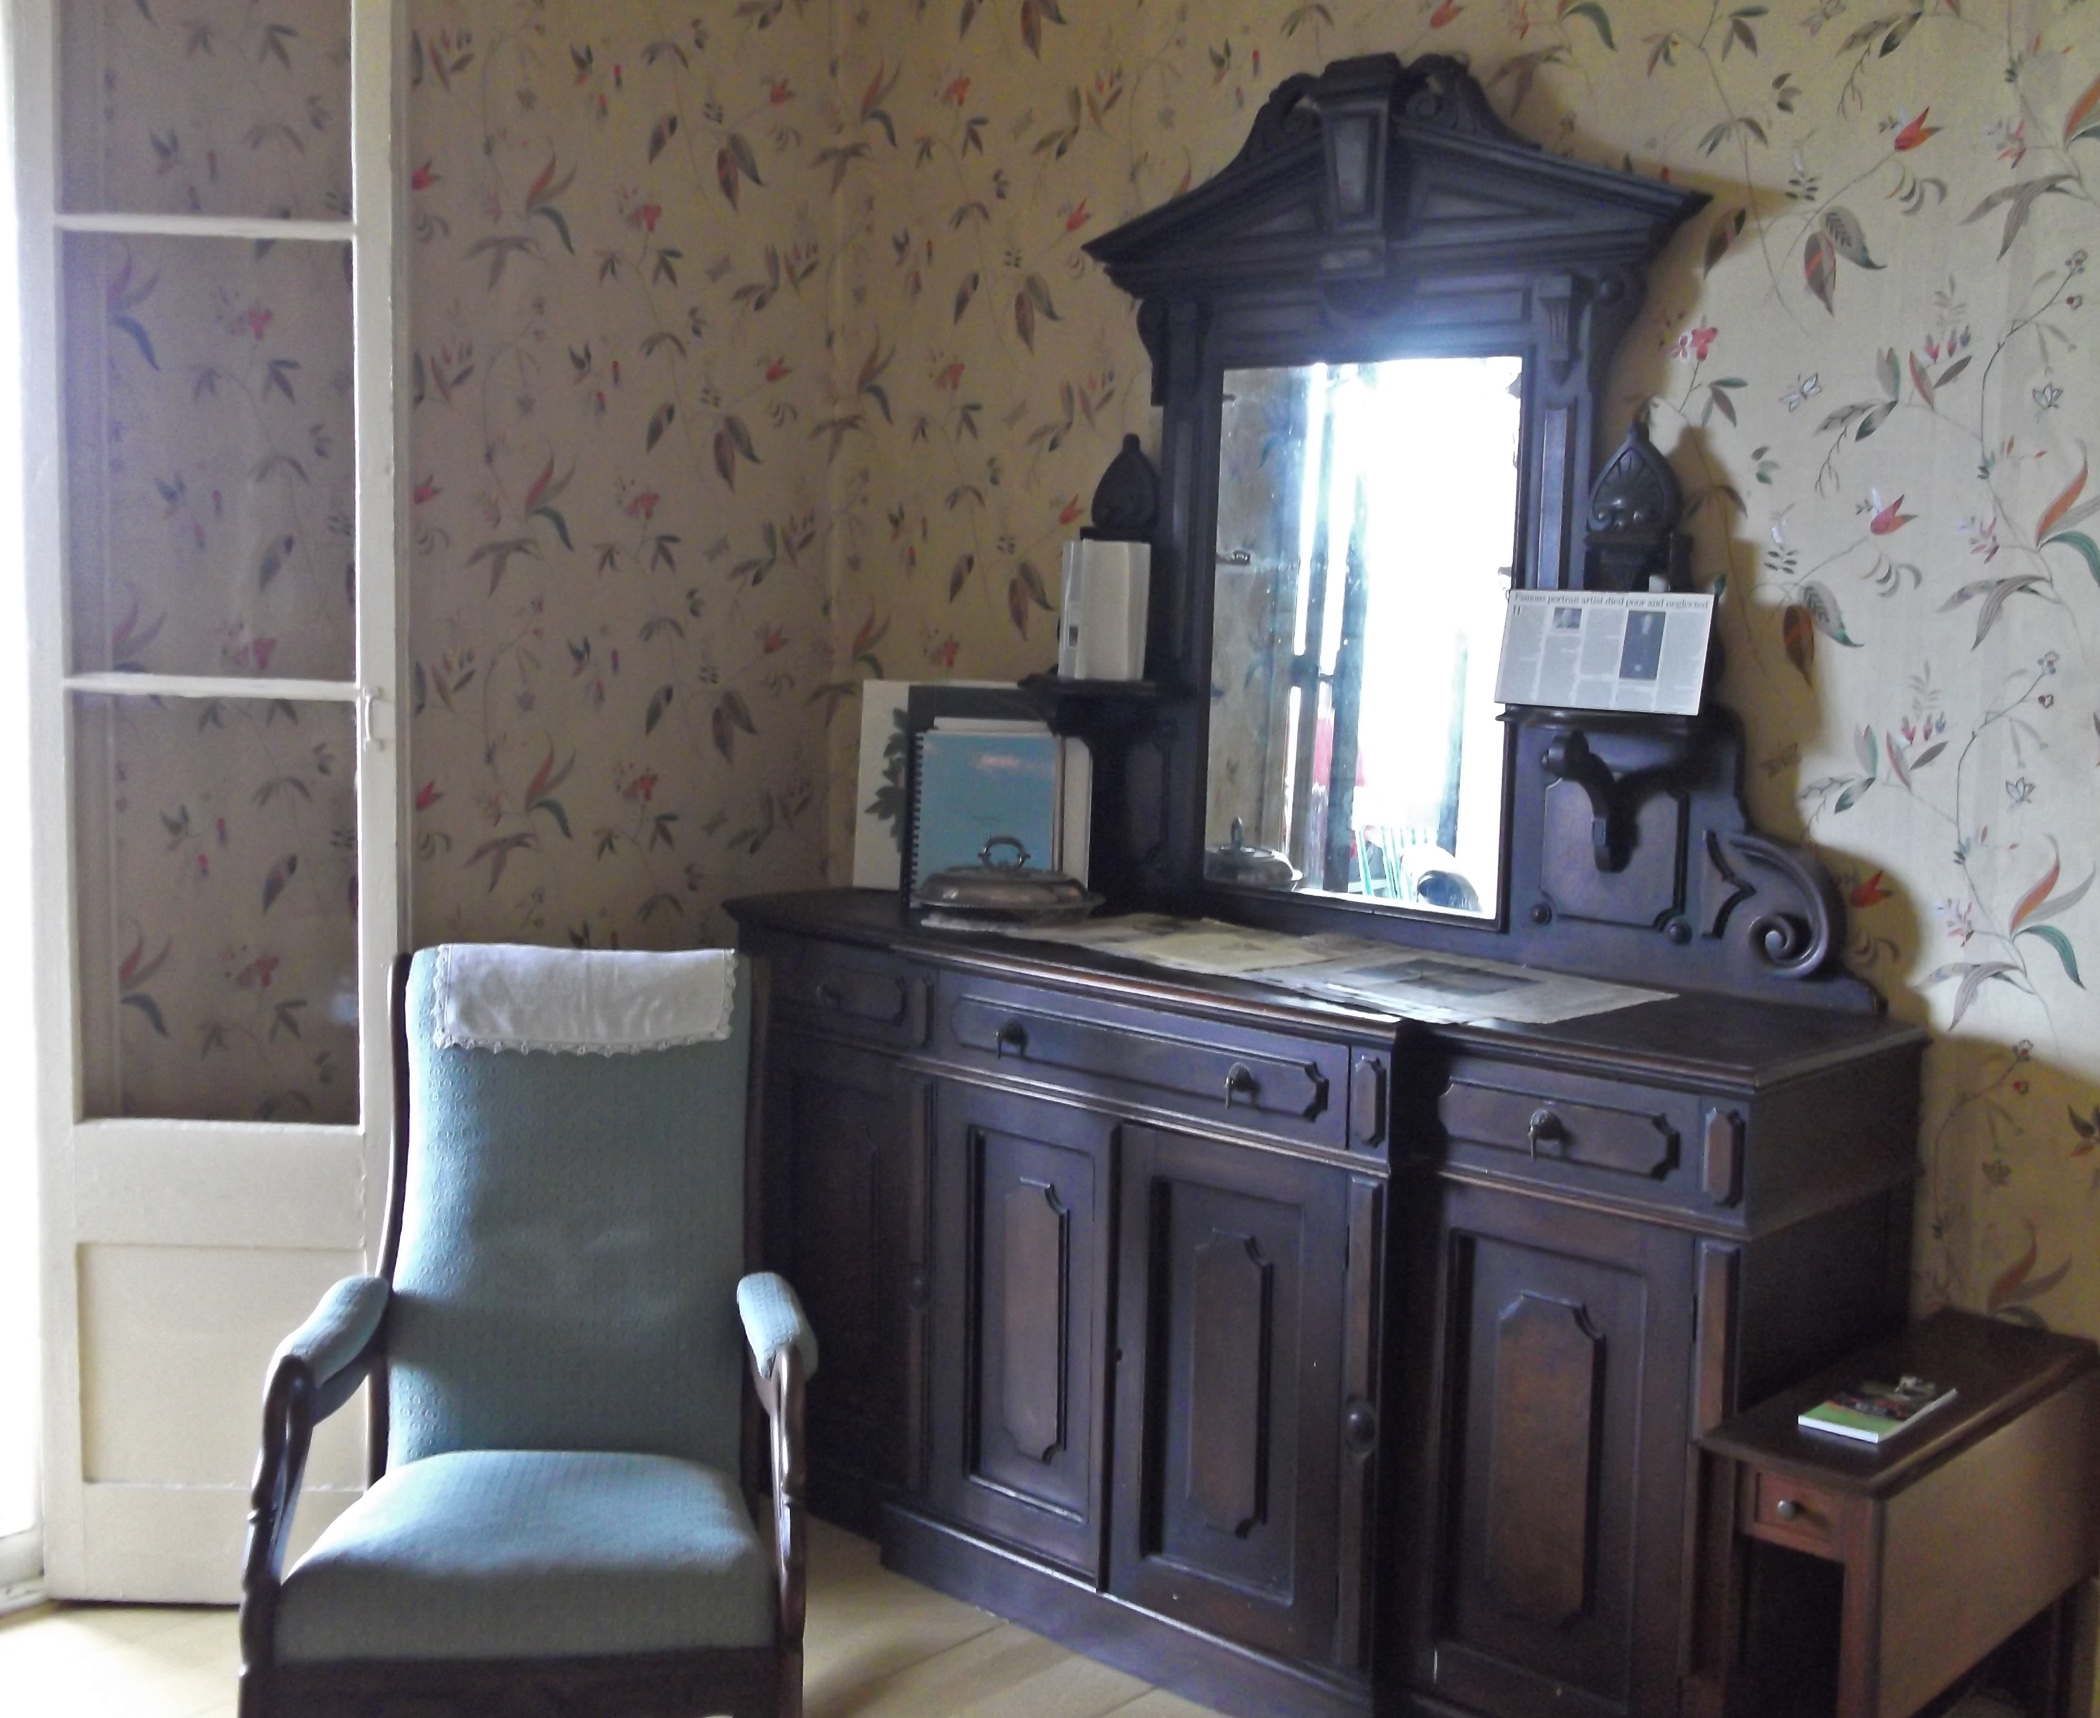 Vue intérieure d’un coin de salle à manger meublée d’une chaise capitonnée et d’un buffet en bois avec tiroirs et portes, surmonté d’un miroir, adossé à un mur recouvert de papier peint à motifs floraux. 